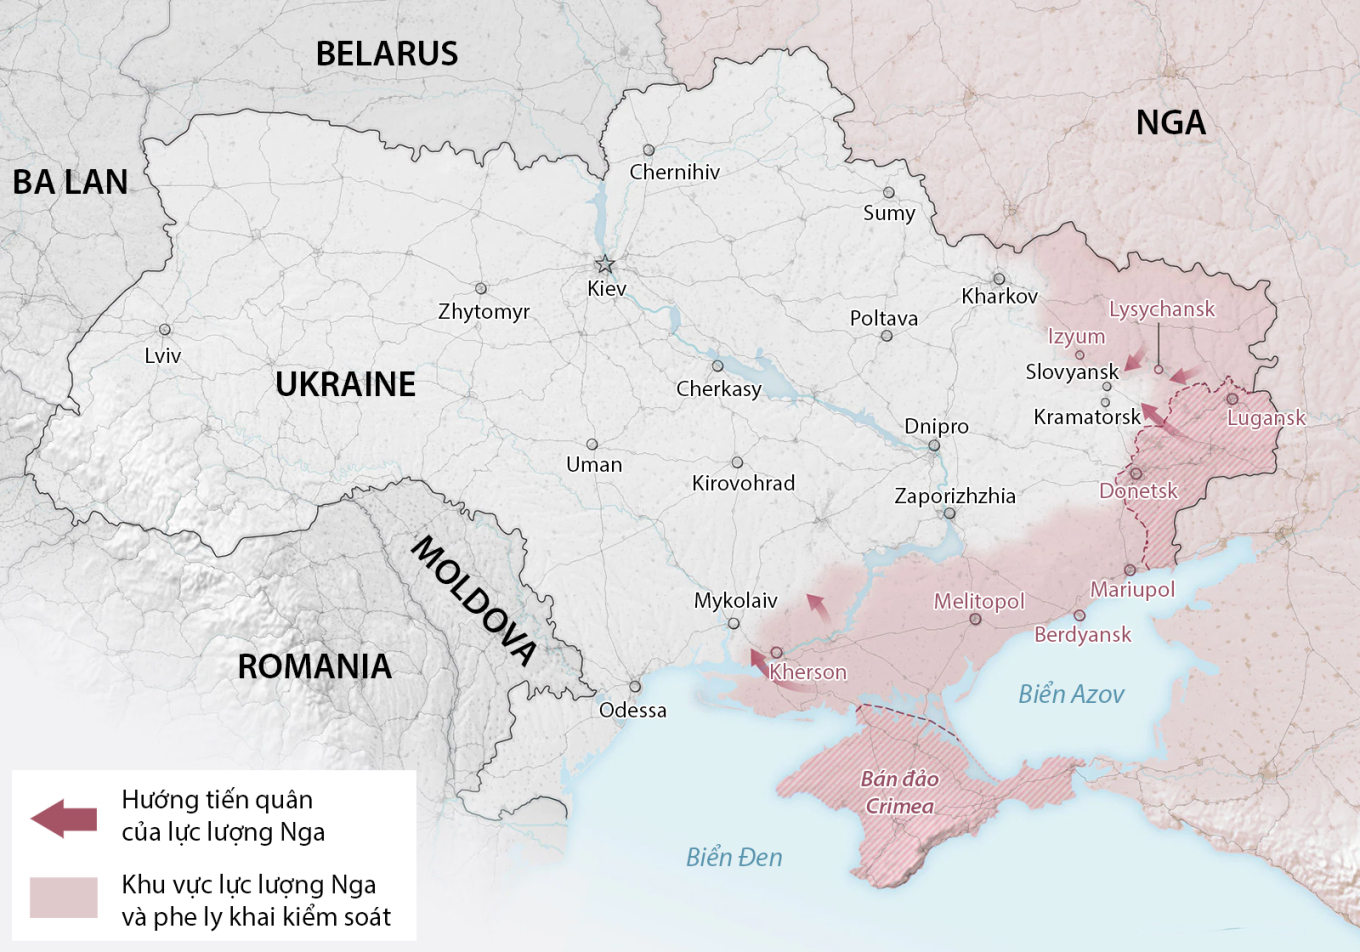 Cục diện chiến trường Ukraine sau hơn 5 tháng giao tranh. Đồ họa: Washington Post.